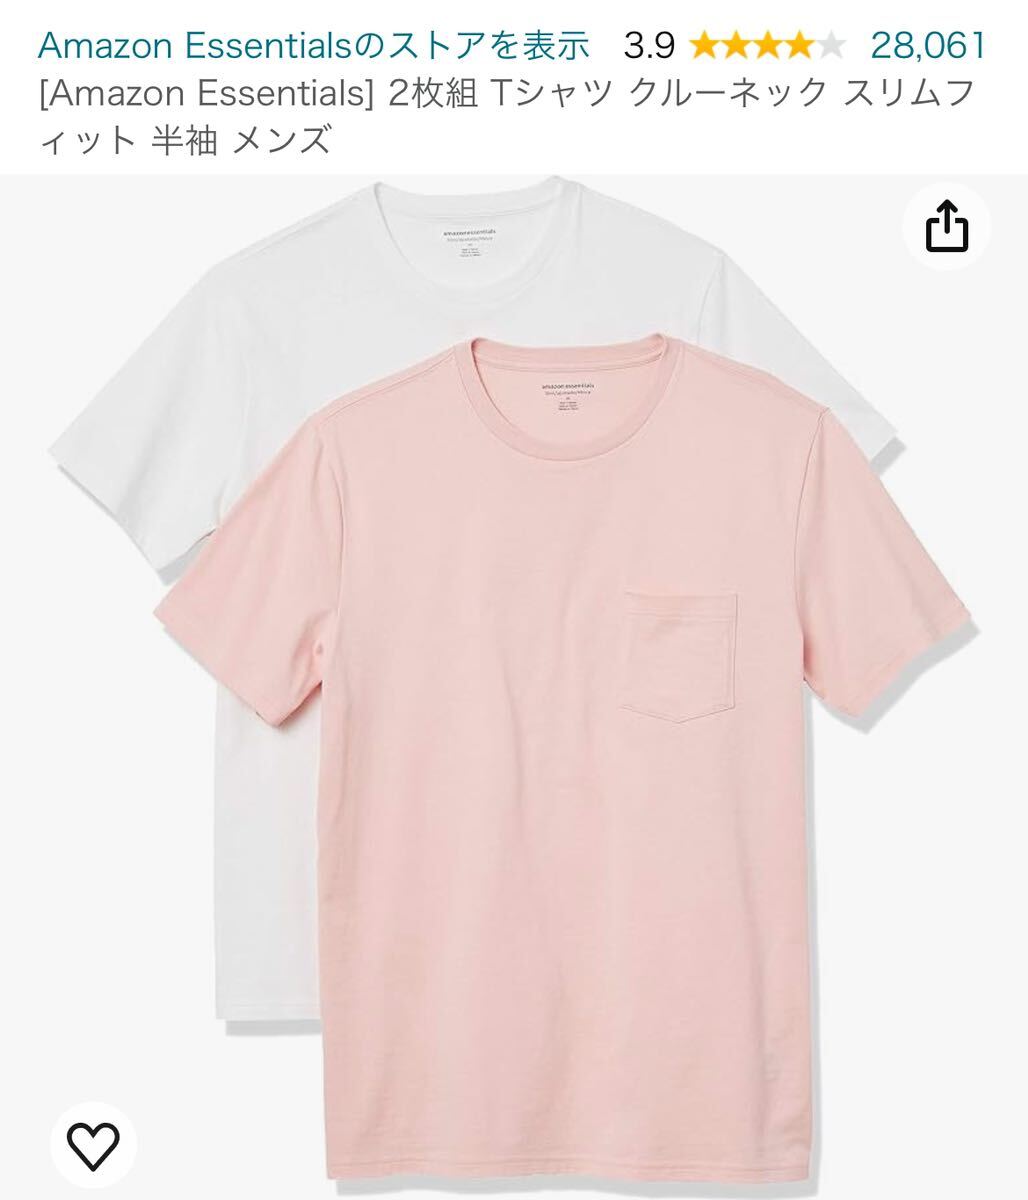 【新品】洋服 まとめ売り Amazon essentials レディース ワンピース メンズ シャツ Tシャツ ボトムス 31枚 セット 123の画像2